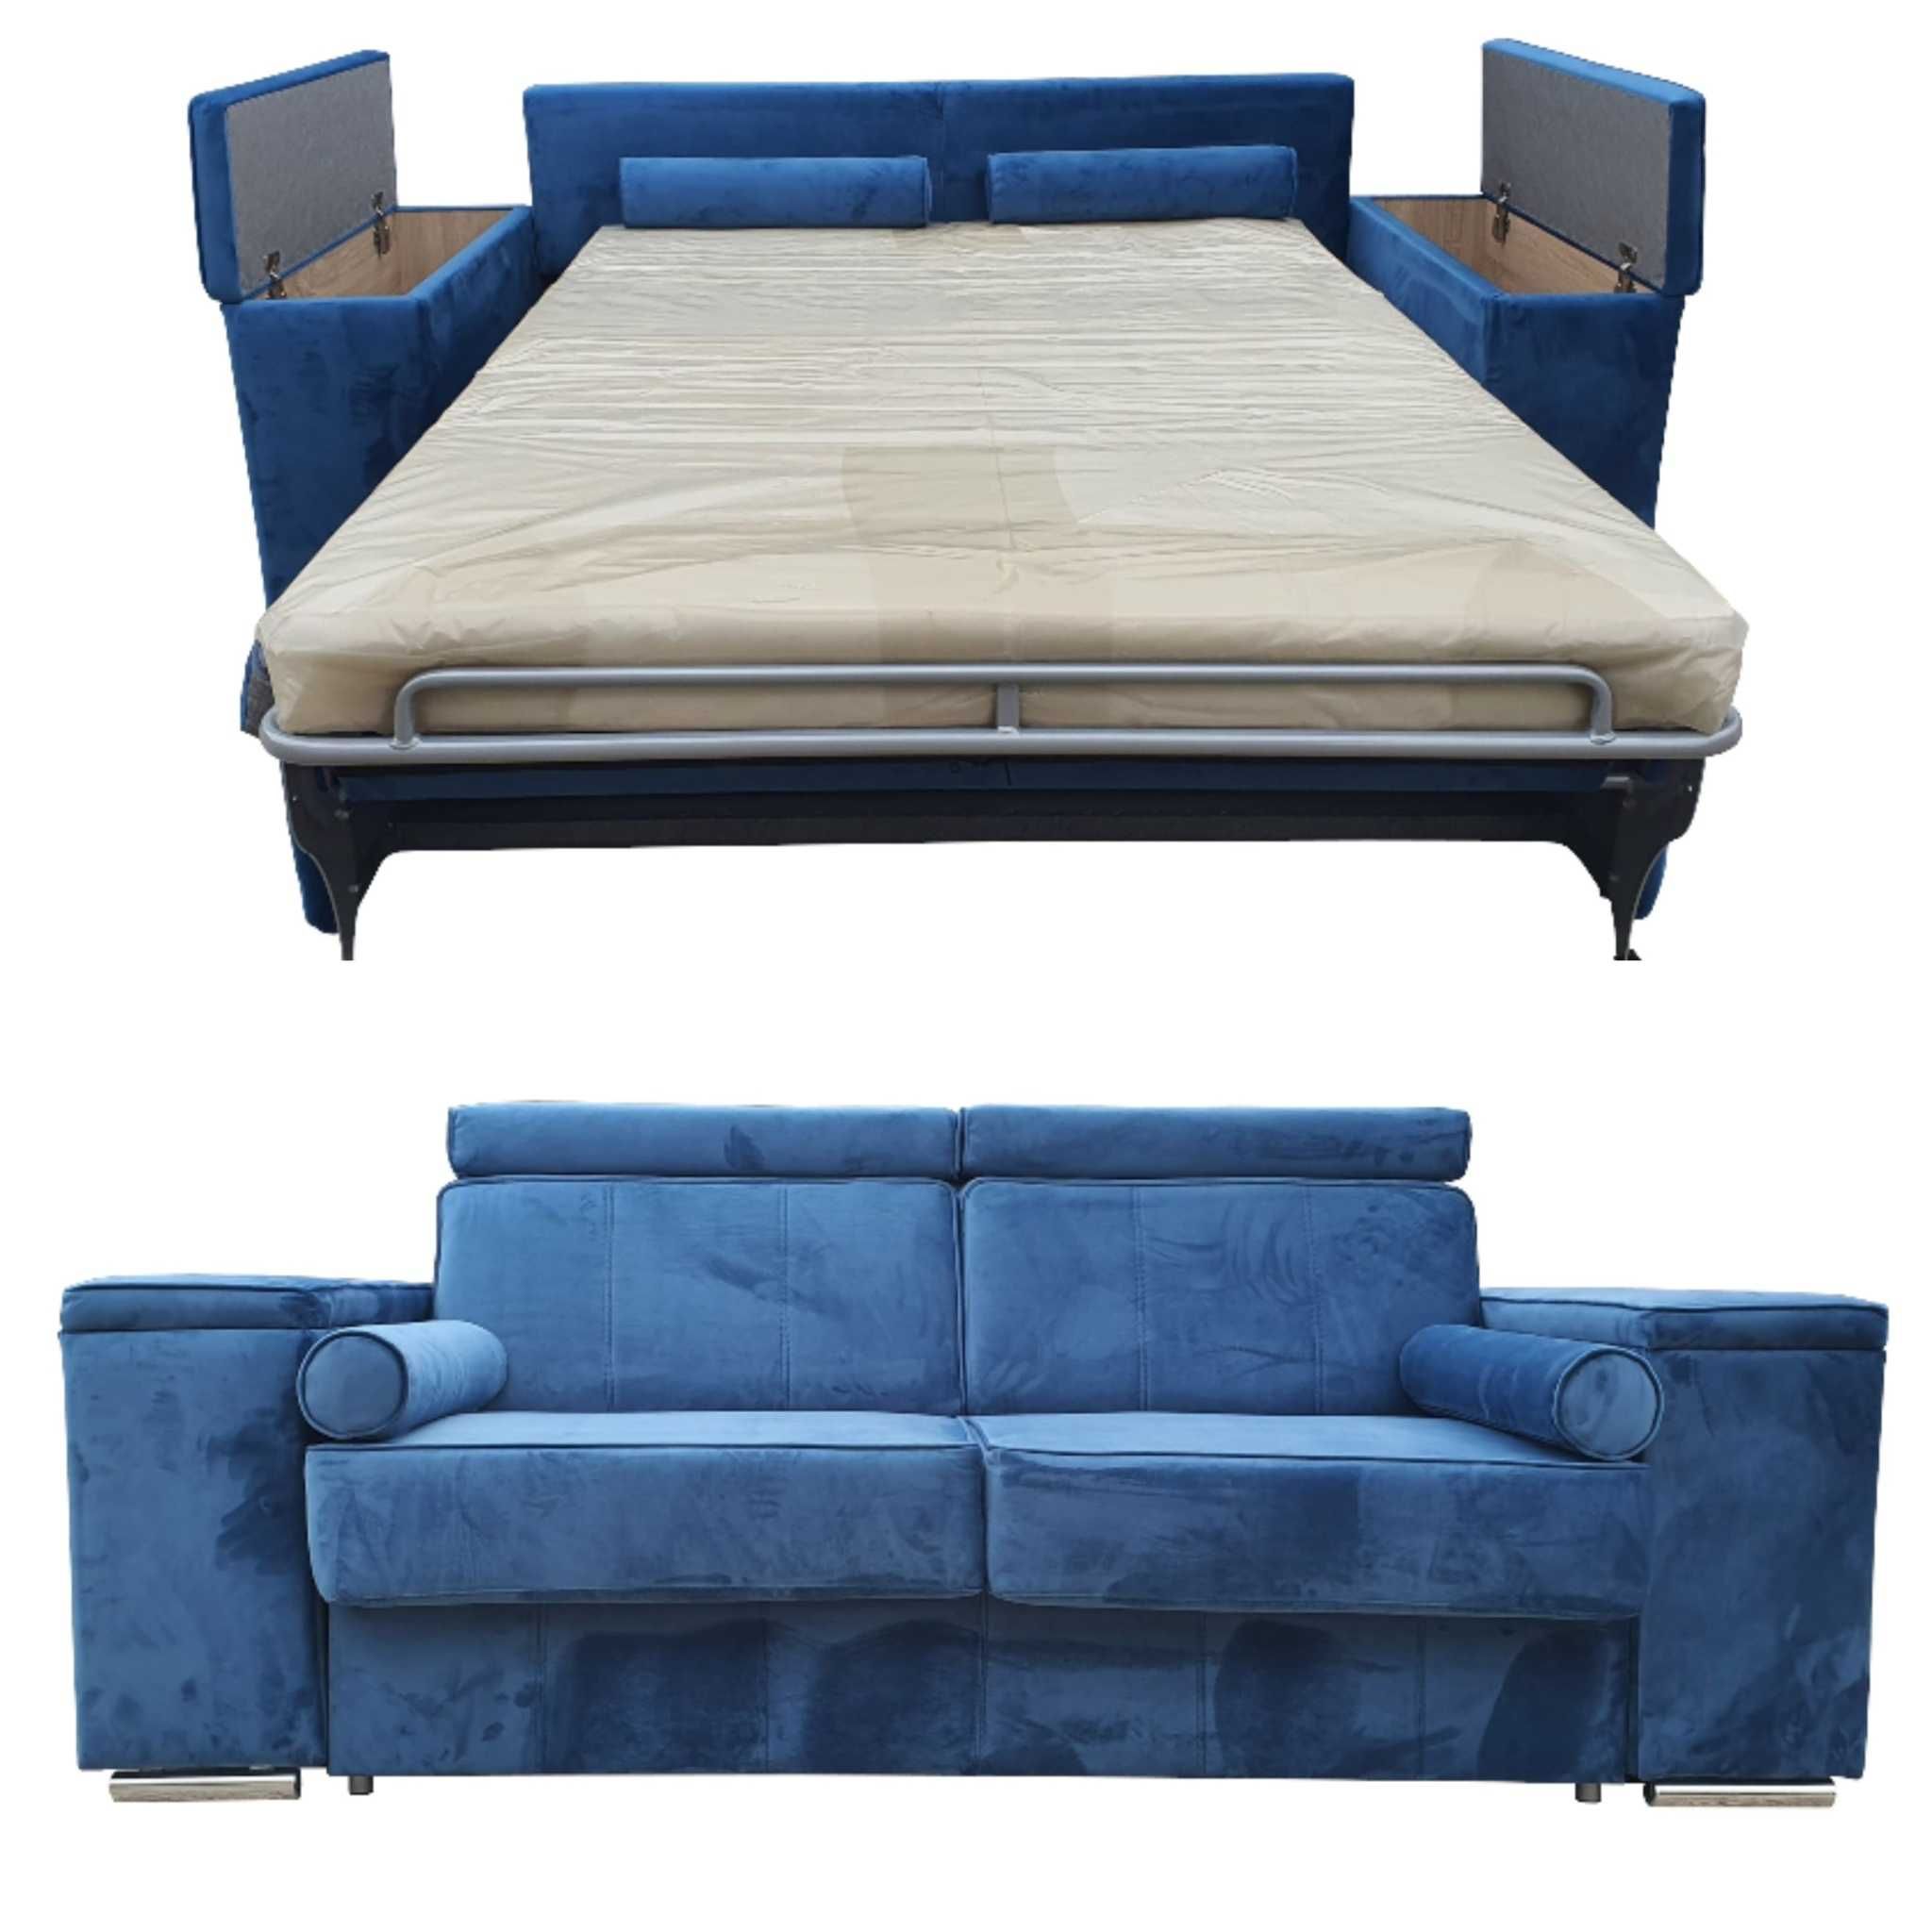 Sofa asti NOVA BED MOLLY LUX 140x200/ 160x200- dostępna OD RĘKI